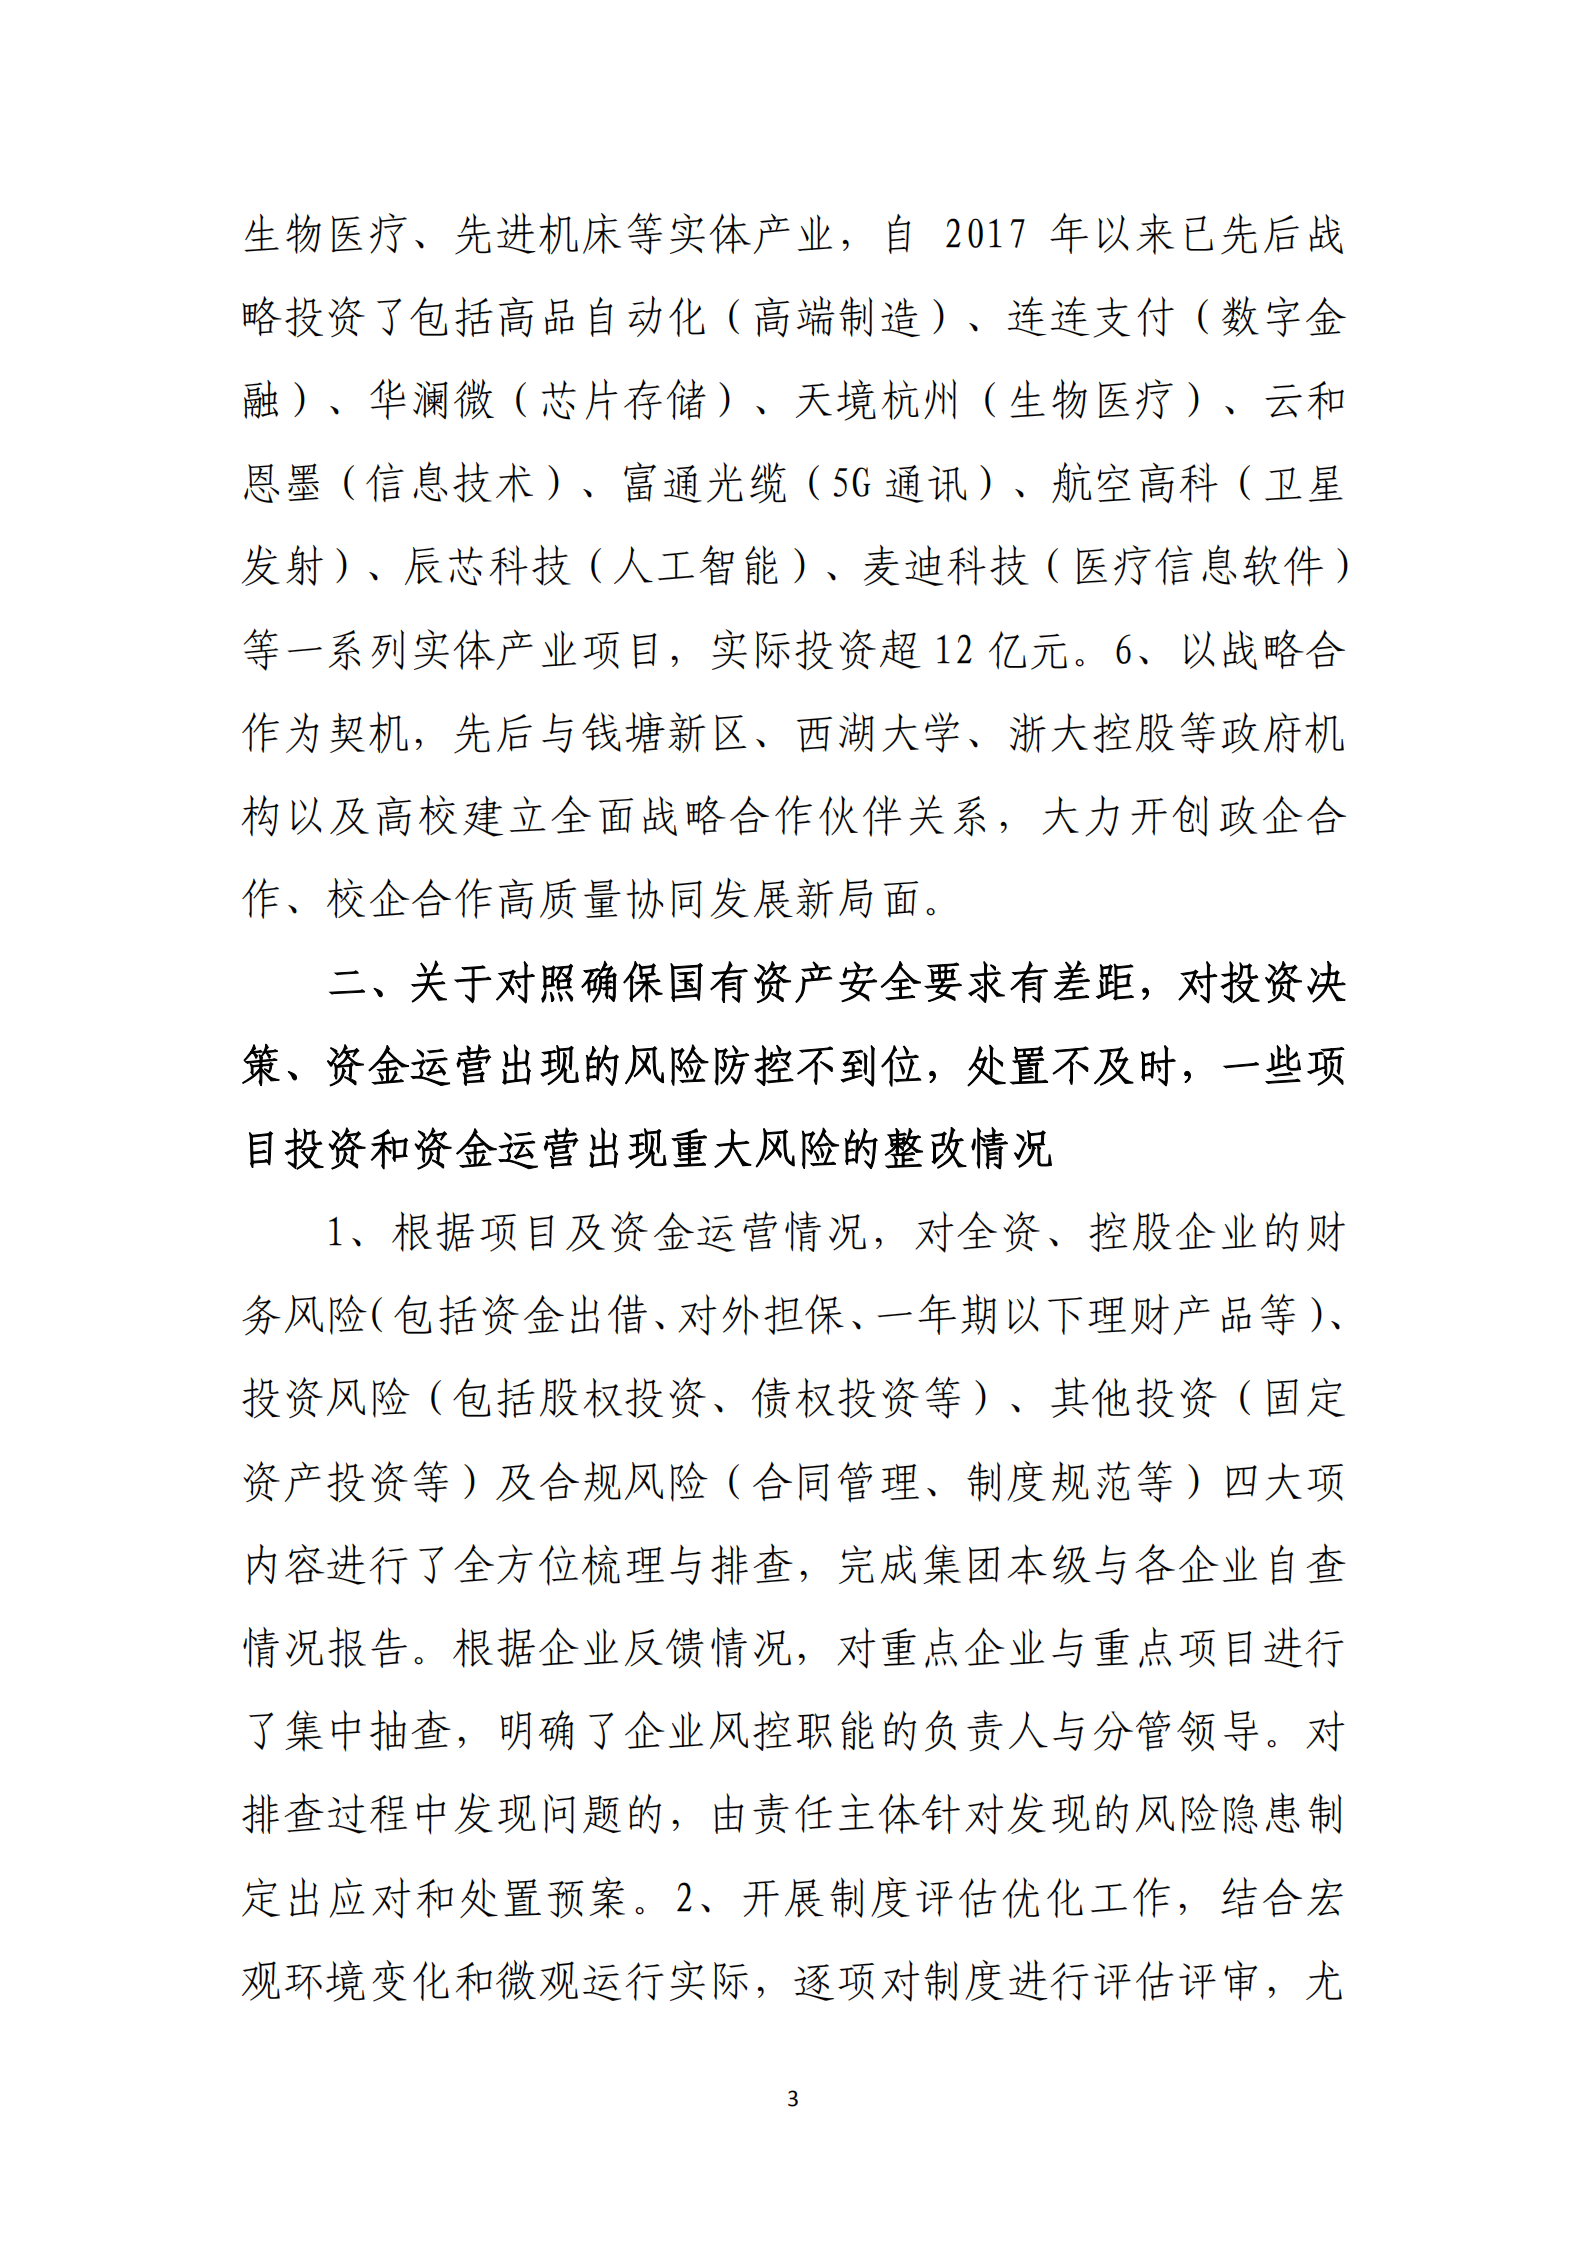 乐虎国际游戏官网党委关于巡察整改情况的通报_02.png